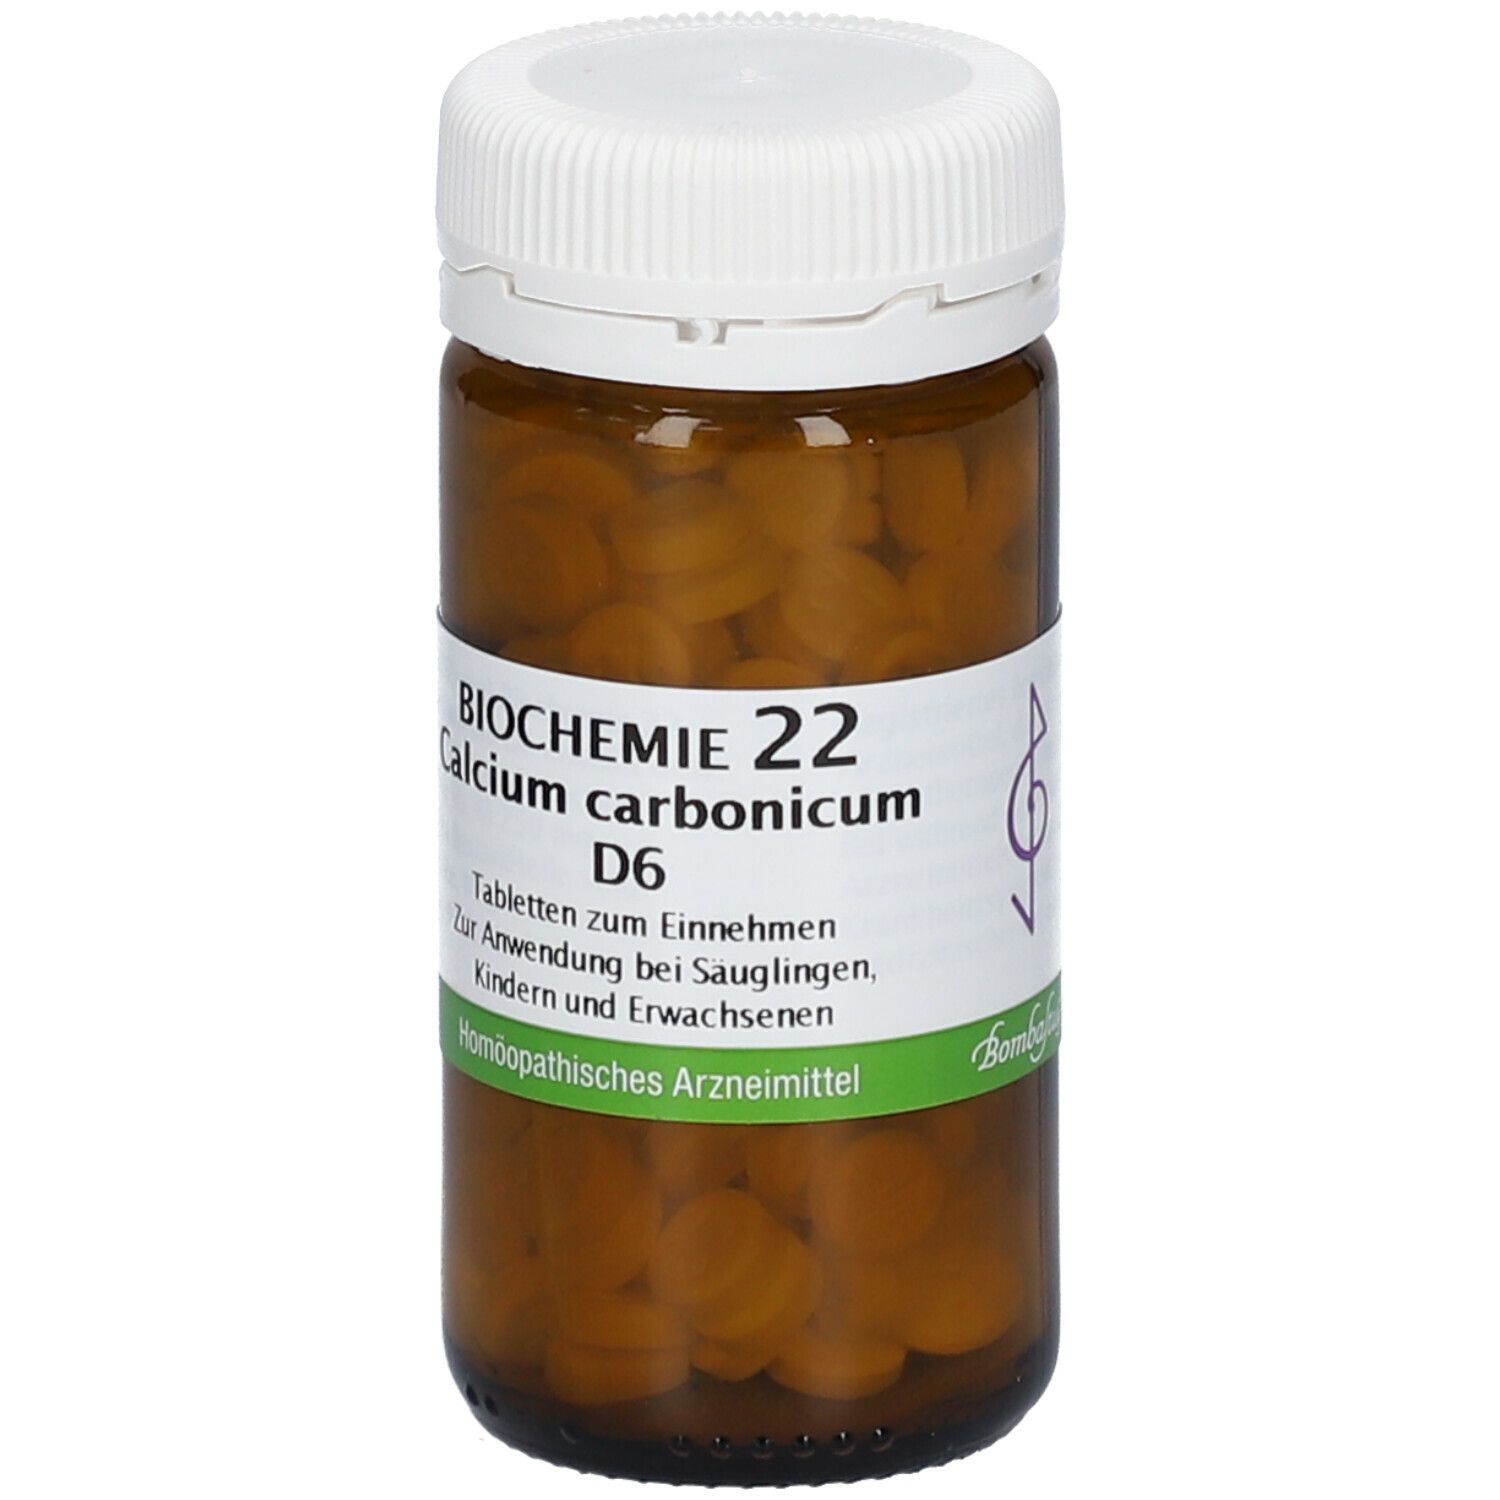 BIOCHEMIE 22 Calcium carbonicum D 6